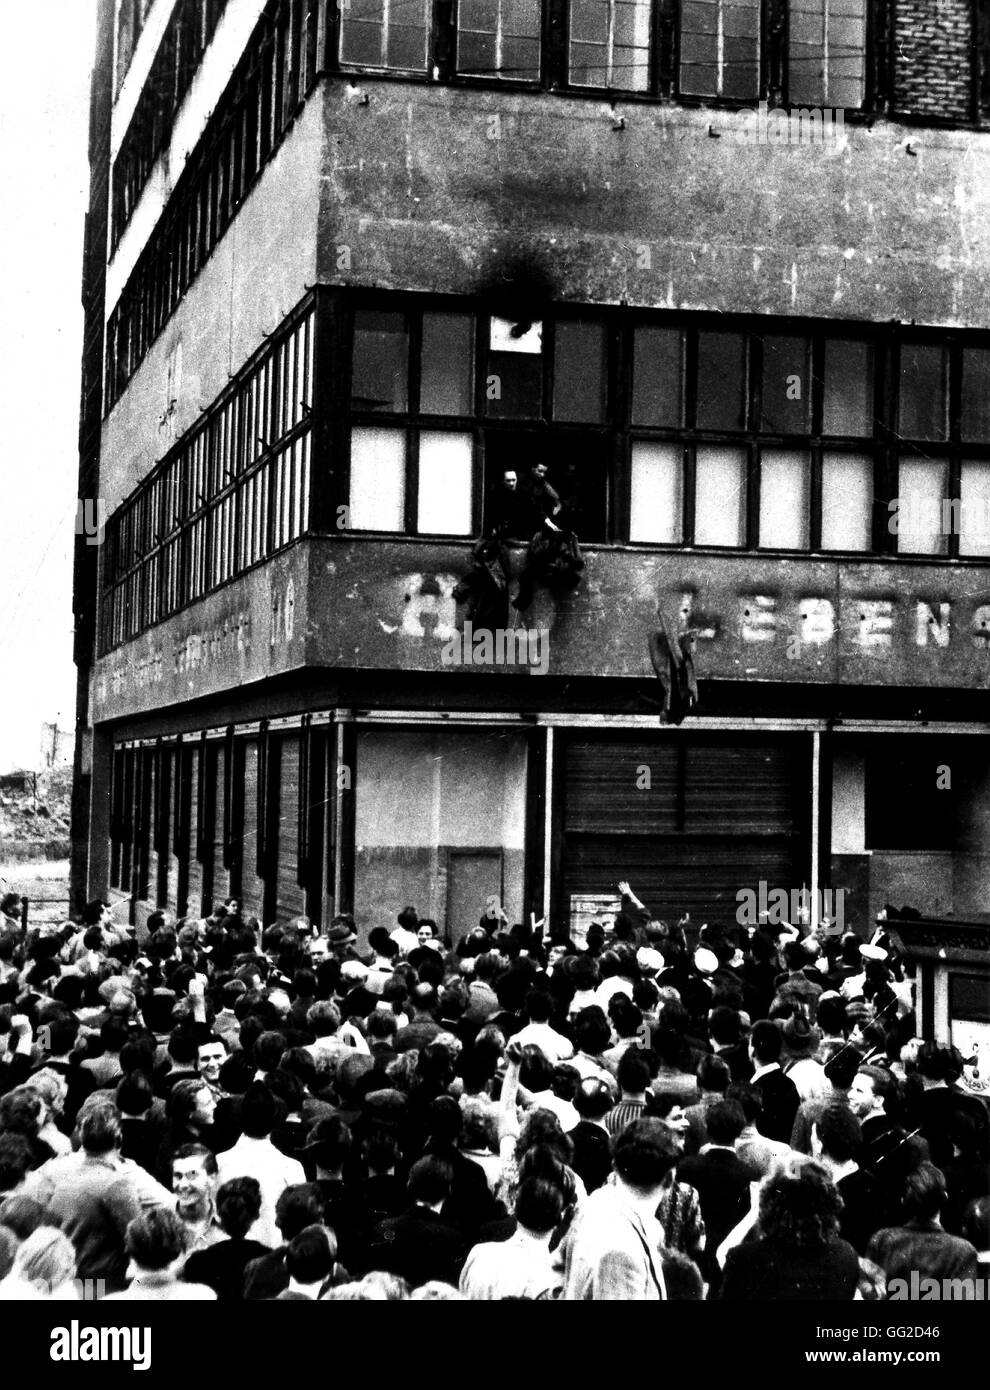 Ost-Berlin: Polizisten ihre Uniformen aus dem Fenster zu werfen, aus einem staatlichen Gebäude umgeben von Demonstranten 19. Juni 1953 die Deutschen Demokratischen Republik (DDR) Washington. Nationalarchiv Stockfoto